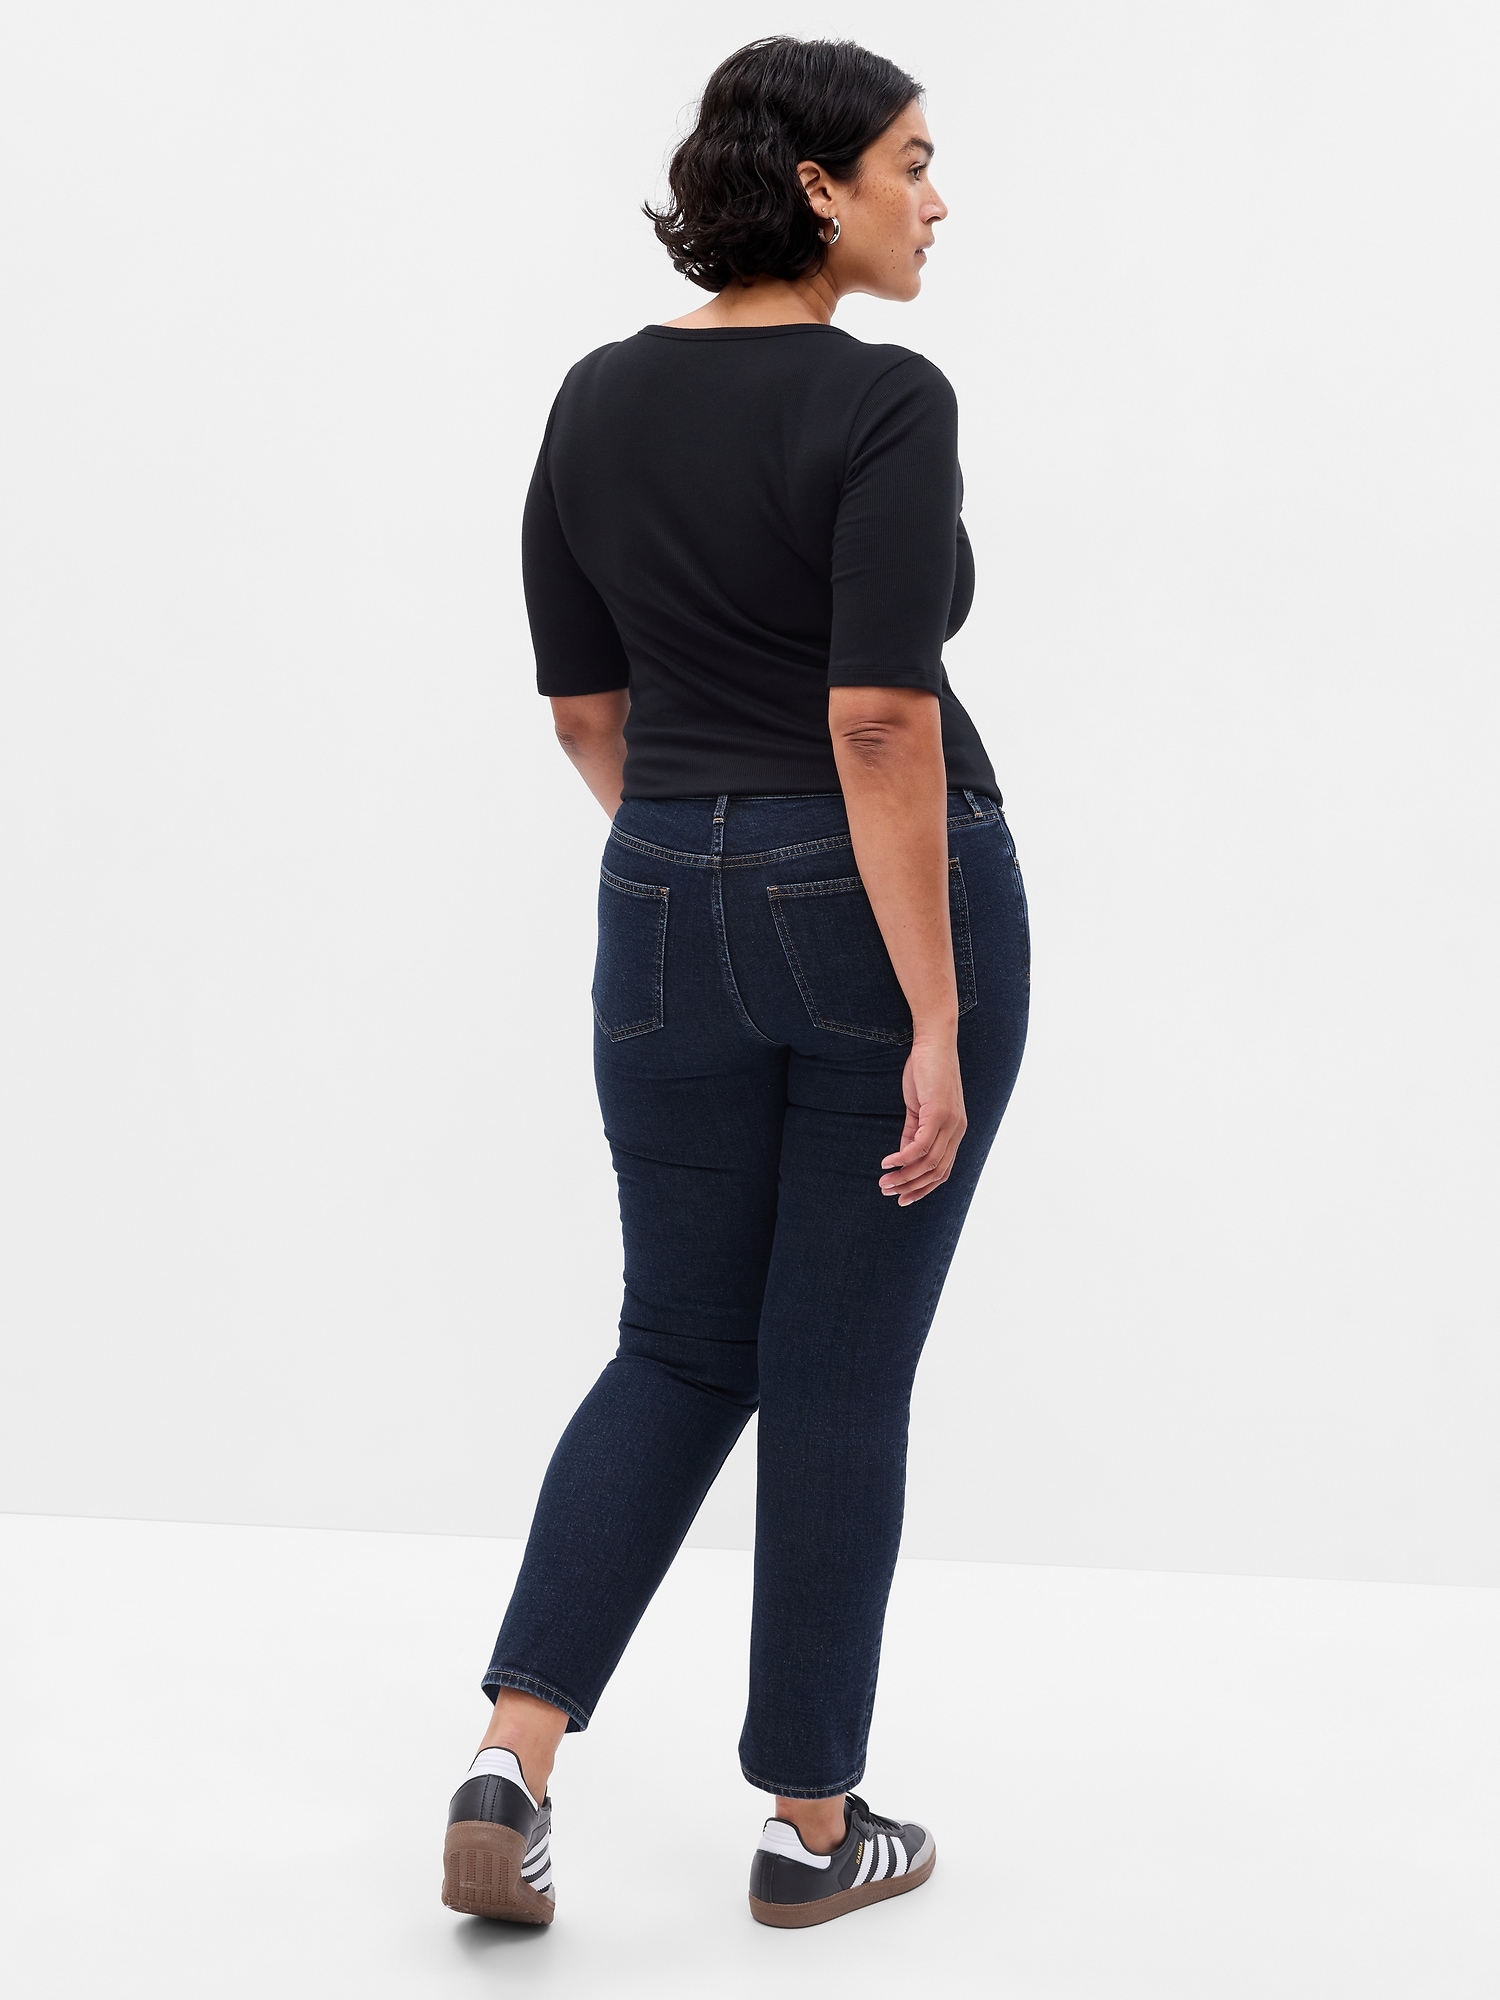 Low Rise Vintage Slim Jeans | Gap